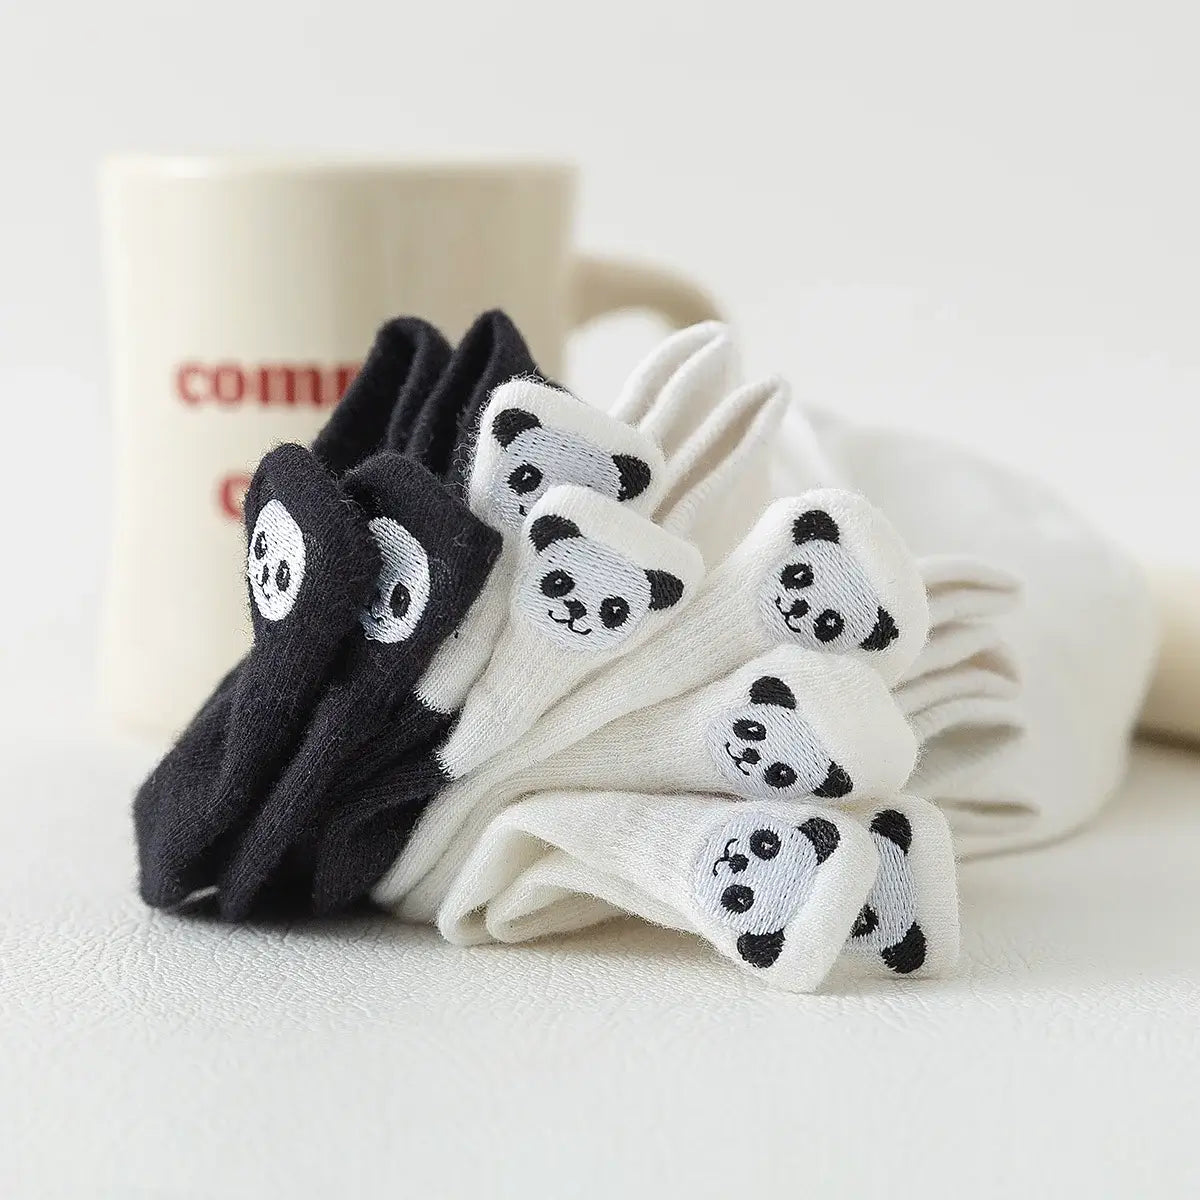 Chaussettes en coton à languette à motif panda pour femme | Chaussettes douces et respirantes | Un cadeau parfait pour les femmes de tous âges | Disponibles à un prix abordable.